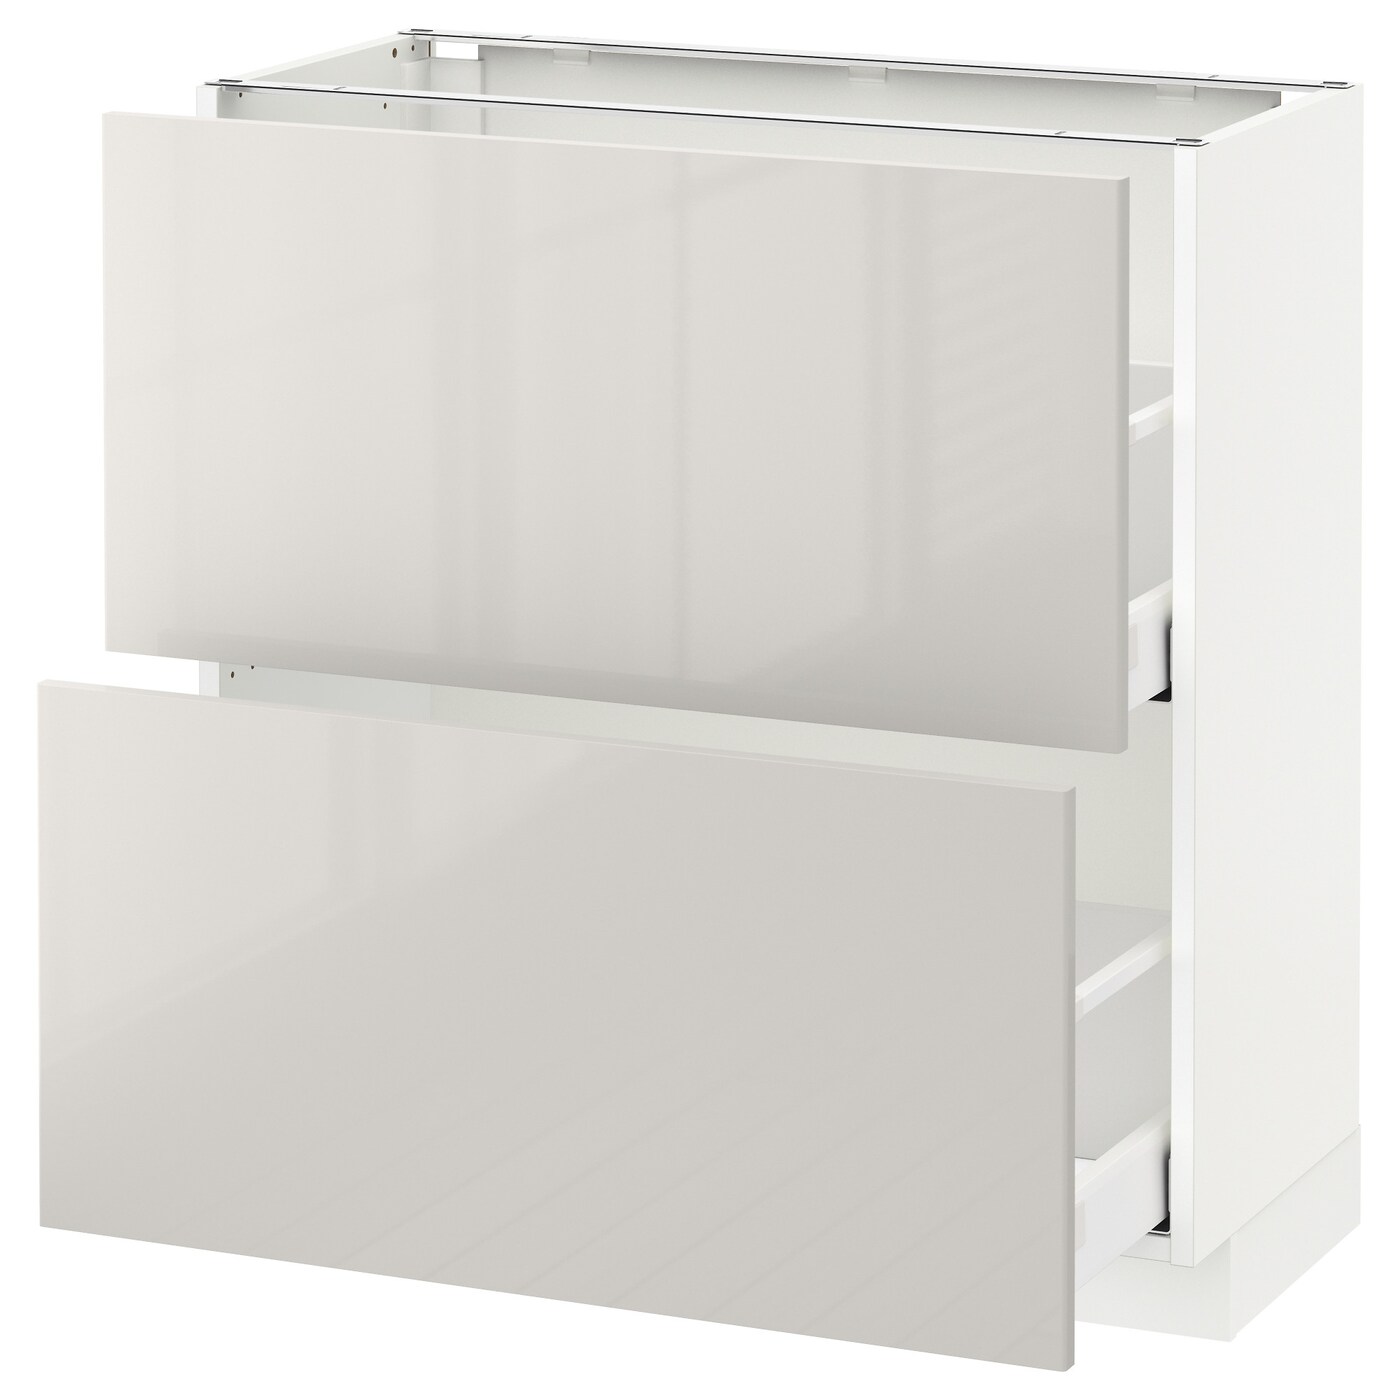 Напольный шкаф - IKEA METOD MAXIMERA, 88x39x80см, белый/светло-серый, МЕТОД МАКСИМЕРА ИКЕА